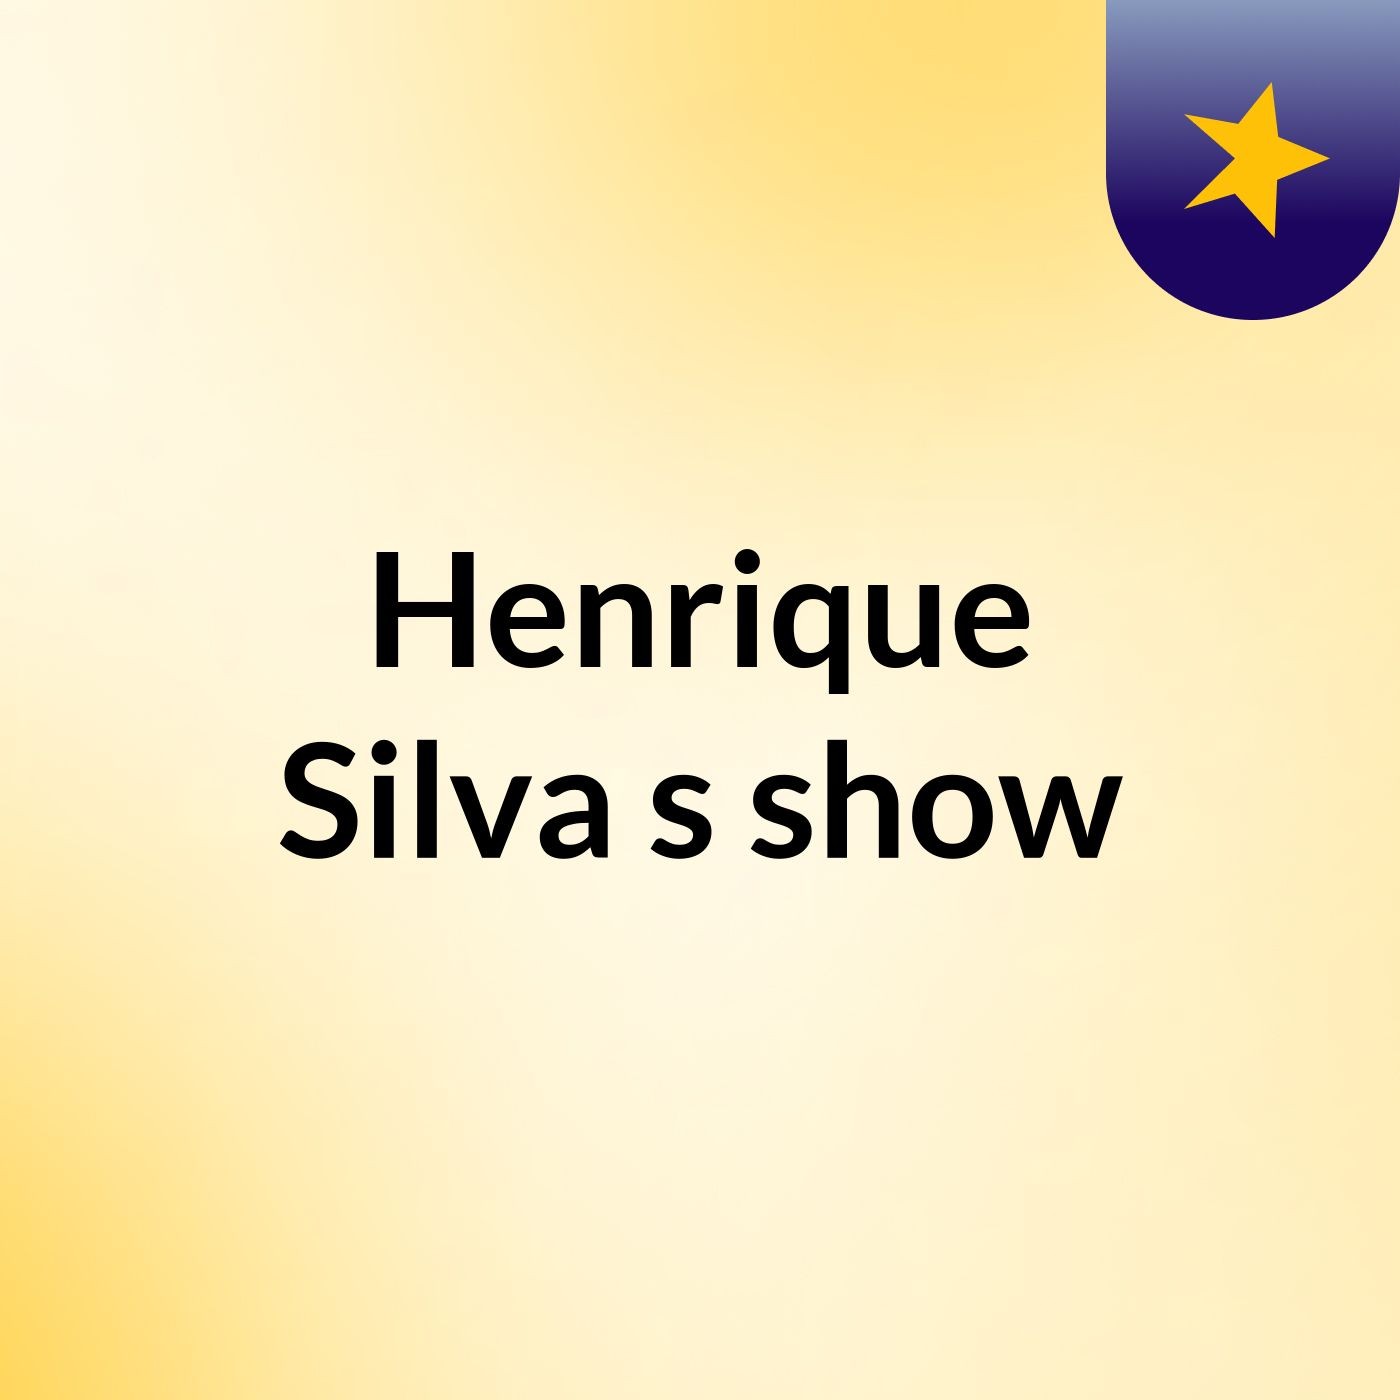 Henrique Silva's show